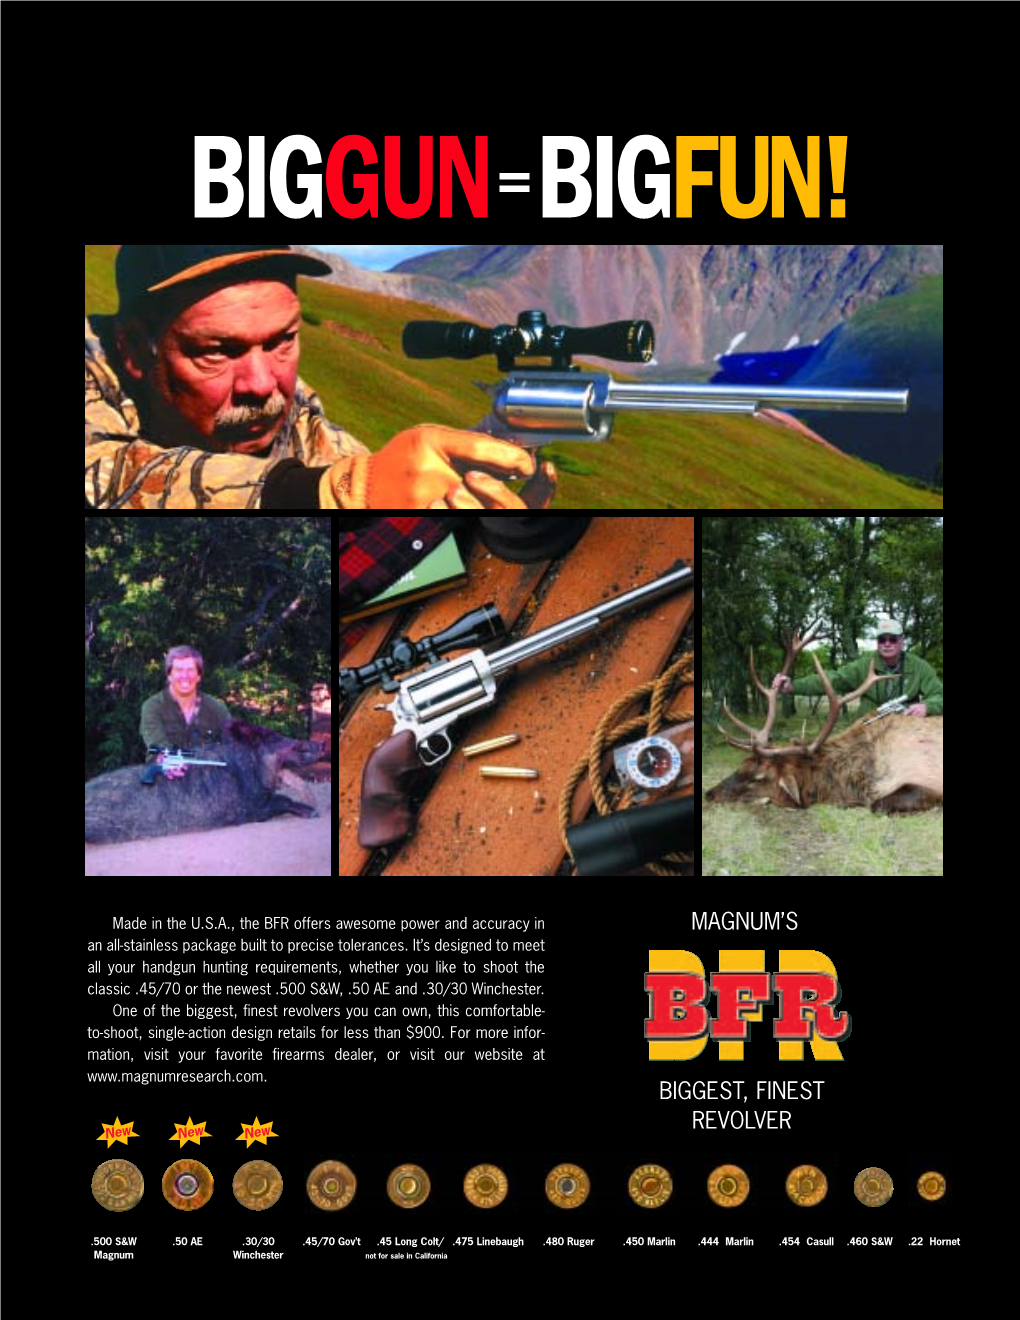 Magnum's Biggest, Finest Revolver